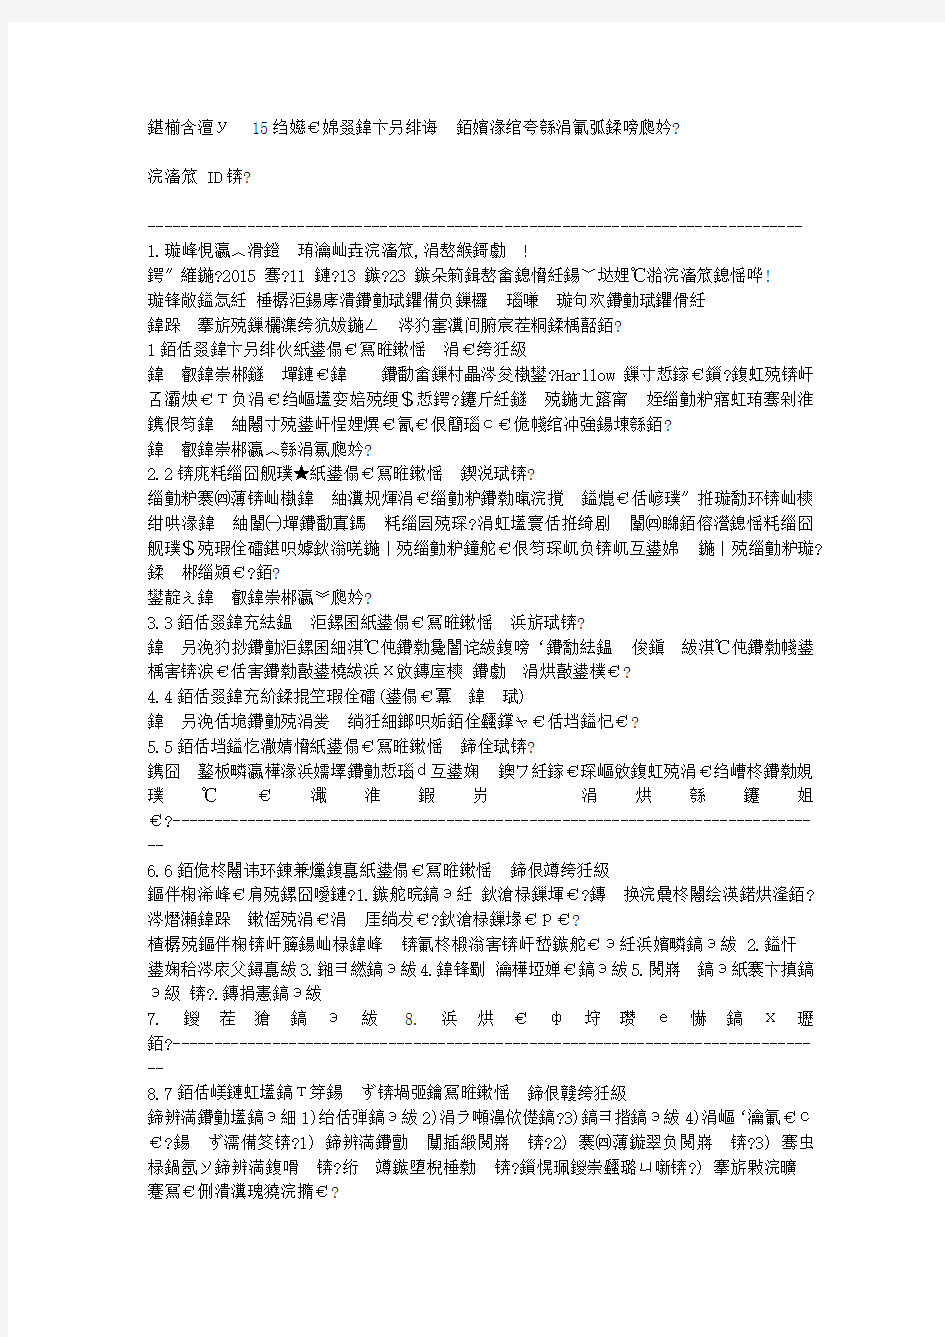 免费在线作业答案在线作业答案北京大学15秋《公共关系学》在线作业满分答案